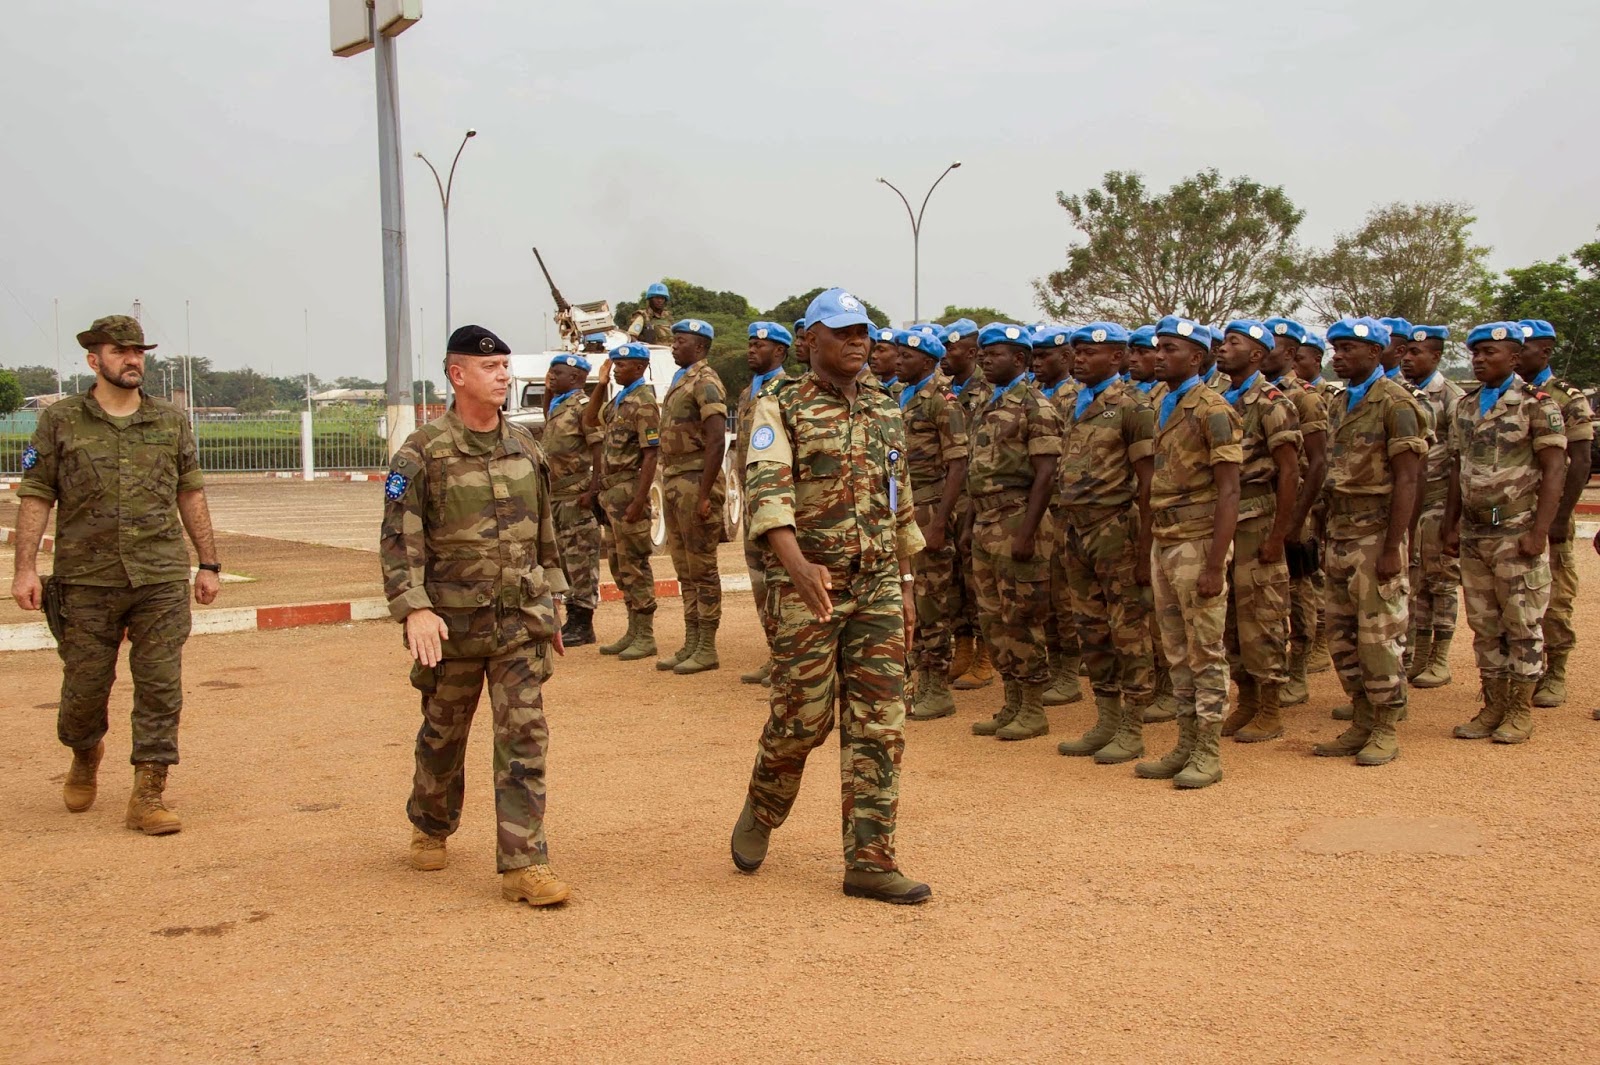 Ευρωπαϊκό Στρατηγείο Λάρισας: «Αποστολή Εξετελέσθη!» Παραδόθηκε εν χρόνω η ασφάλεια του διεθνούς αεροδρομίου του Bangui στις δυνάμεις των Ηνωμένων Εθνών MINUSCA - Φωτογραφία 1